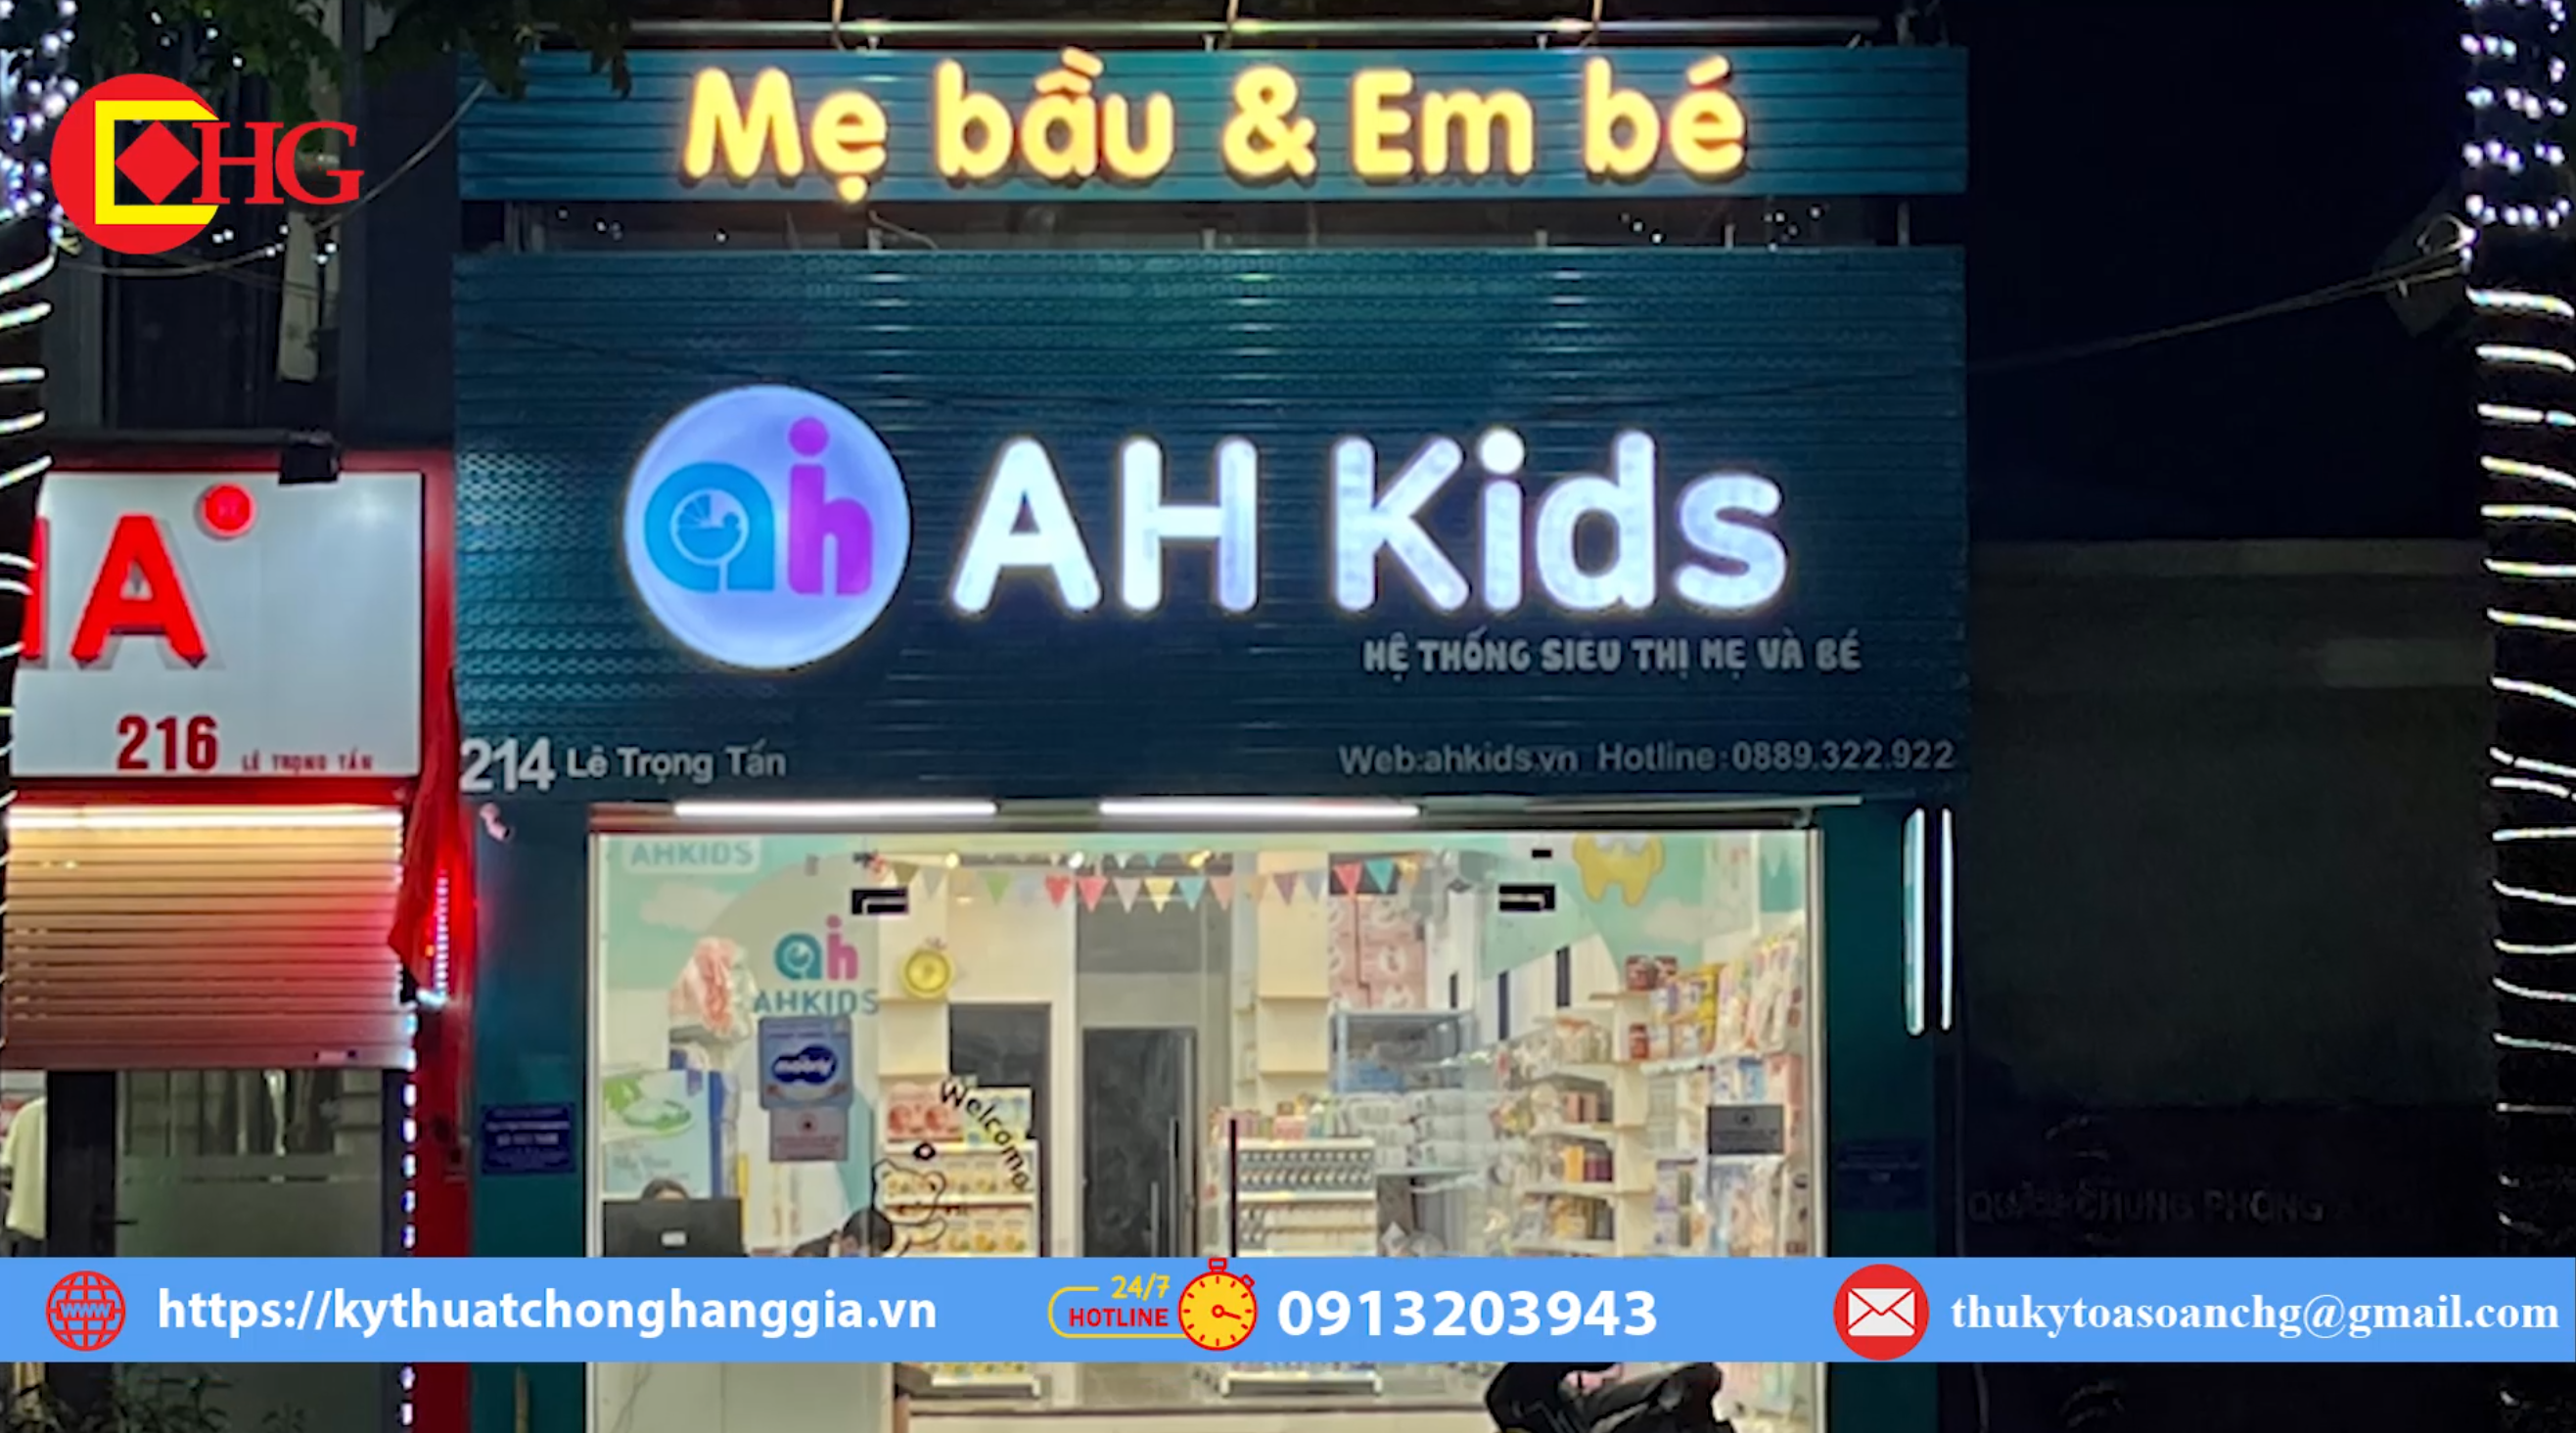 Shop AH Kids kinh doanh hàng nhập lậu